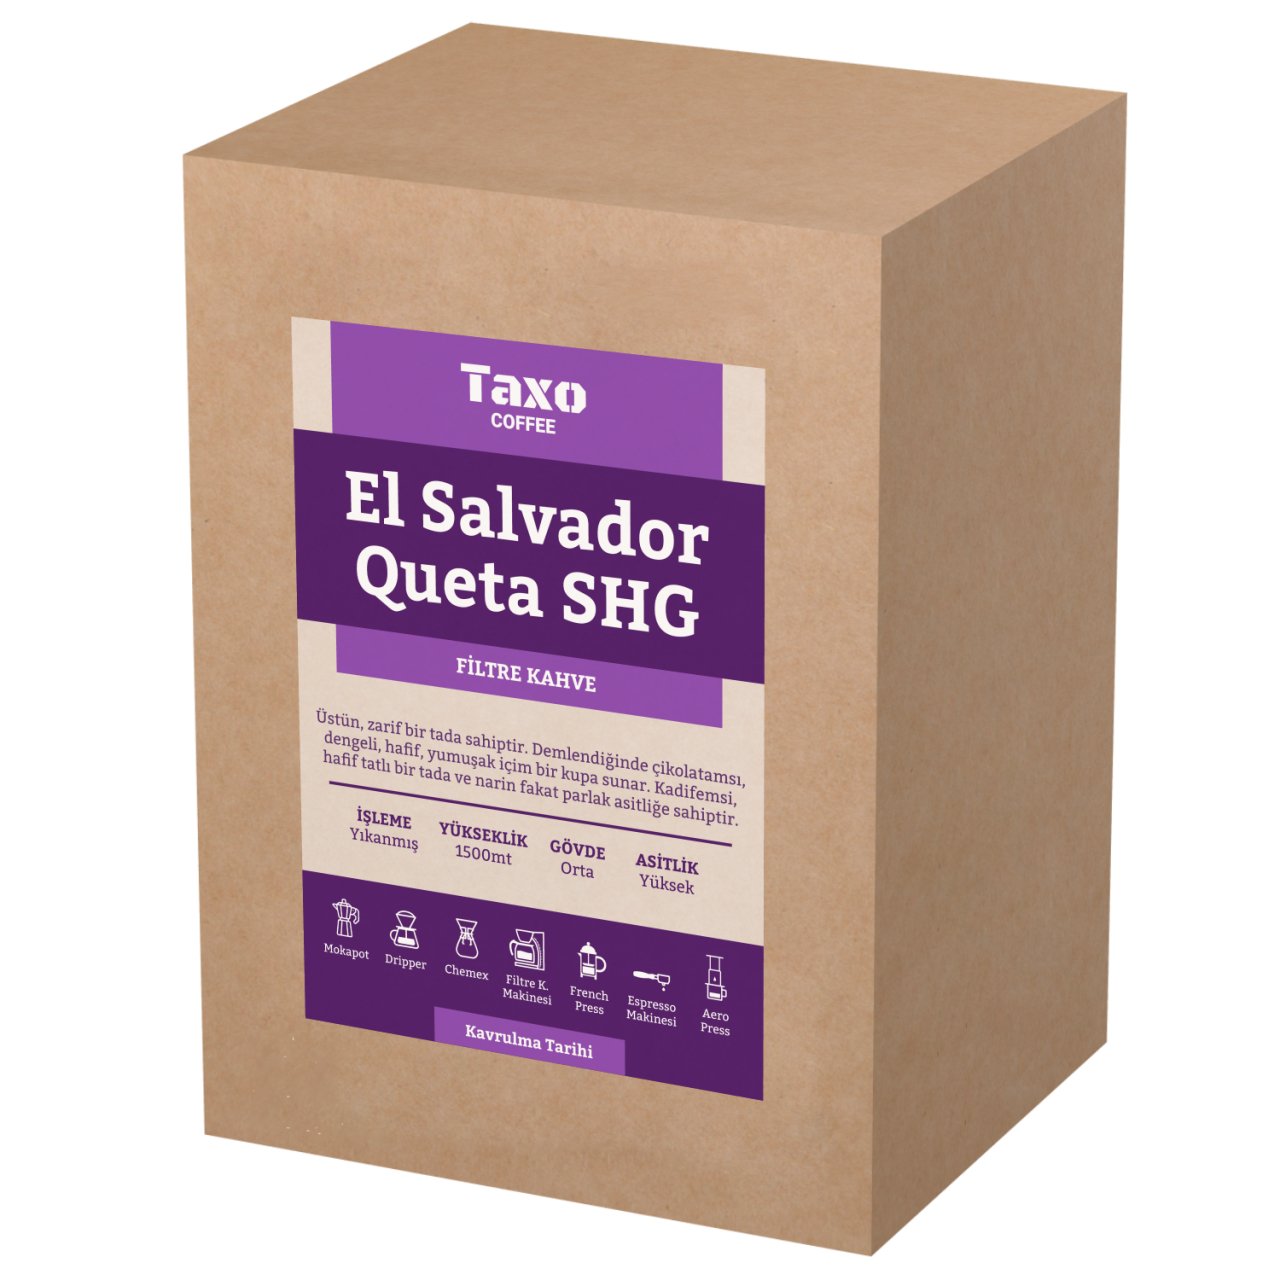 El Salvador Queta 5kg Filtre Kahve